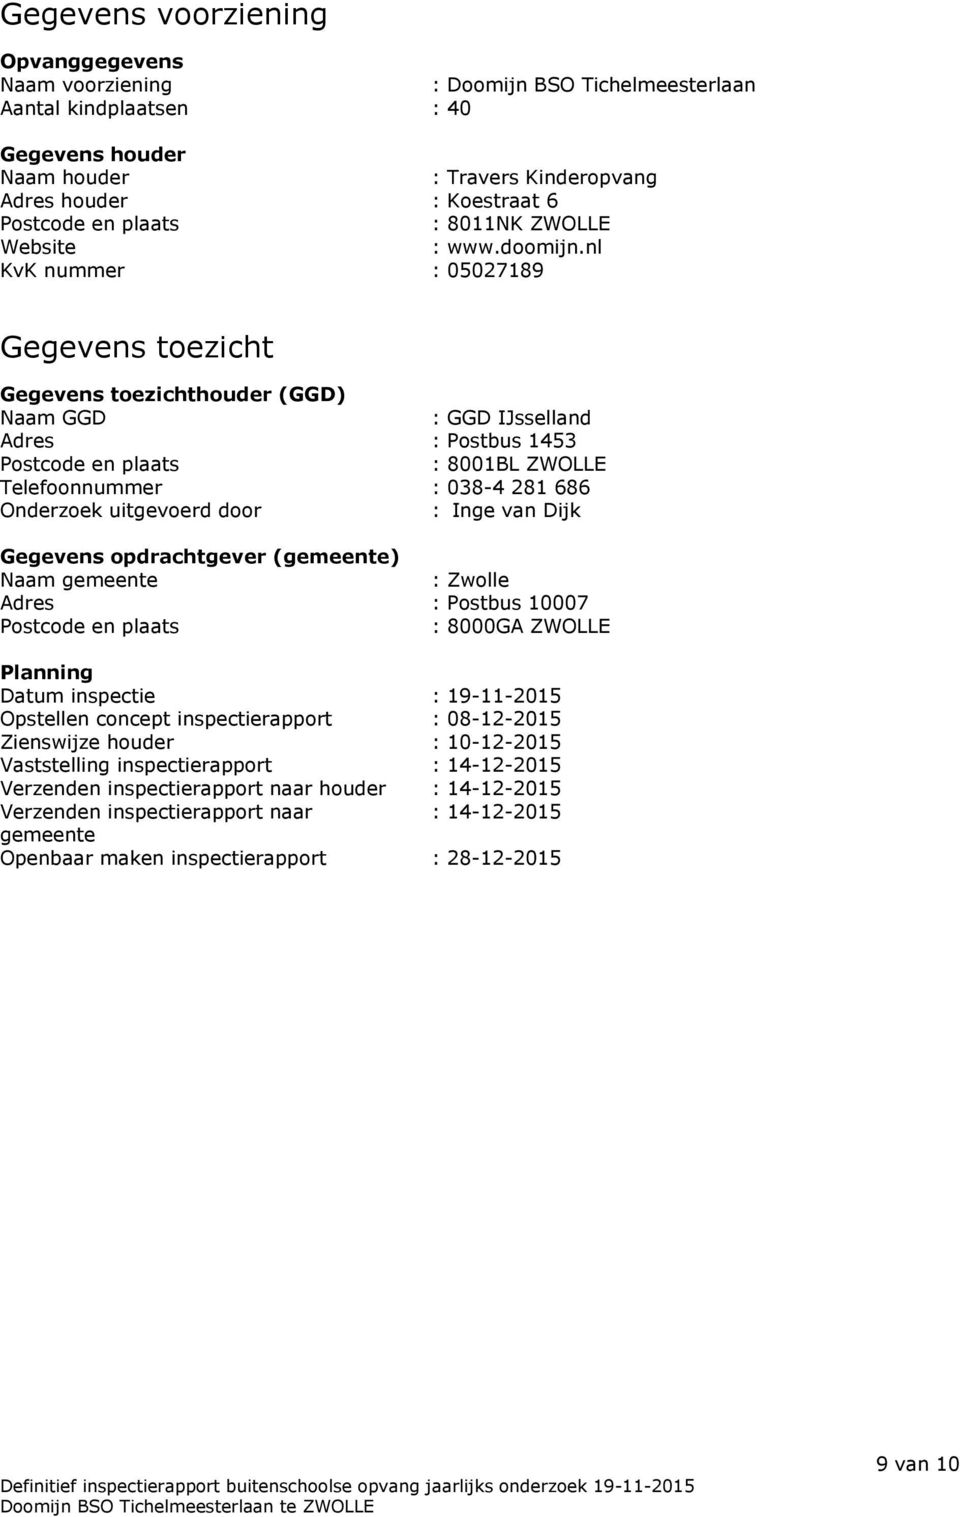 nl KvK nummer : 05027189 Gegevens toezicht Gegevens toezichthouder (GGD) Naam GGD : GGD IJsselland Adres : Postbus 1453 Postcode en plaats : 8001BL ZWOLLE Telefoonnummer : 038-4 281 686 Onderzoek